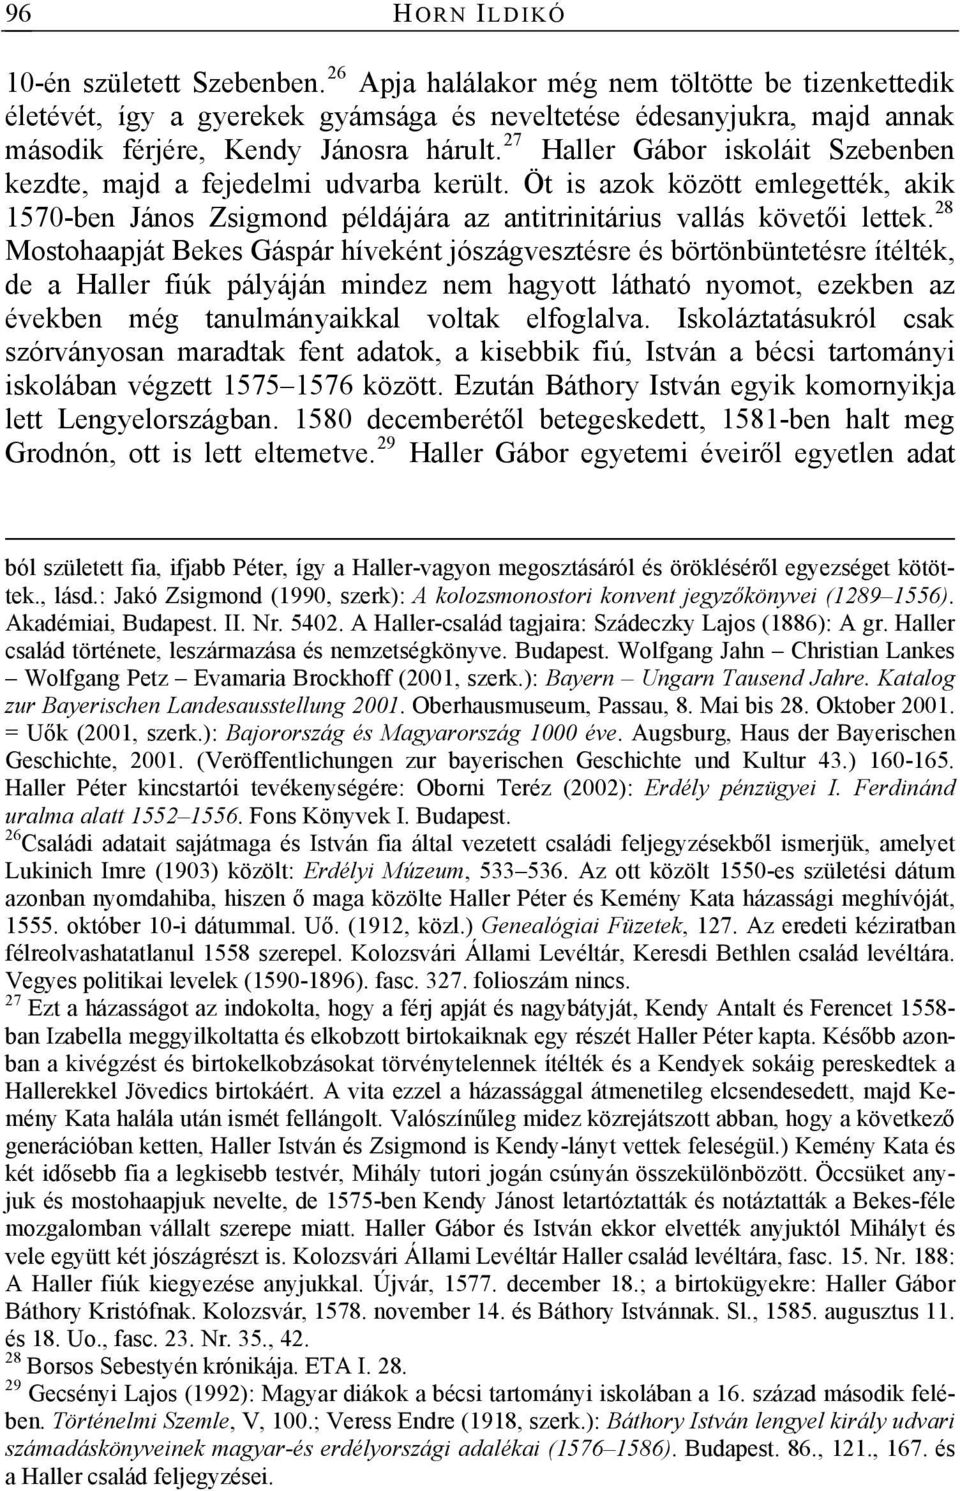 27 Haller Gábor iskoláit Szebenben kezdte, majd a fejedelmi udvarba került. Öt is azok között emlegették, akik 1570-ben János Zsigmond példájára az antitrinitárius vallás követői lettek.